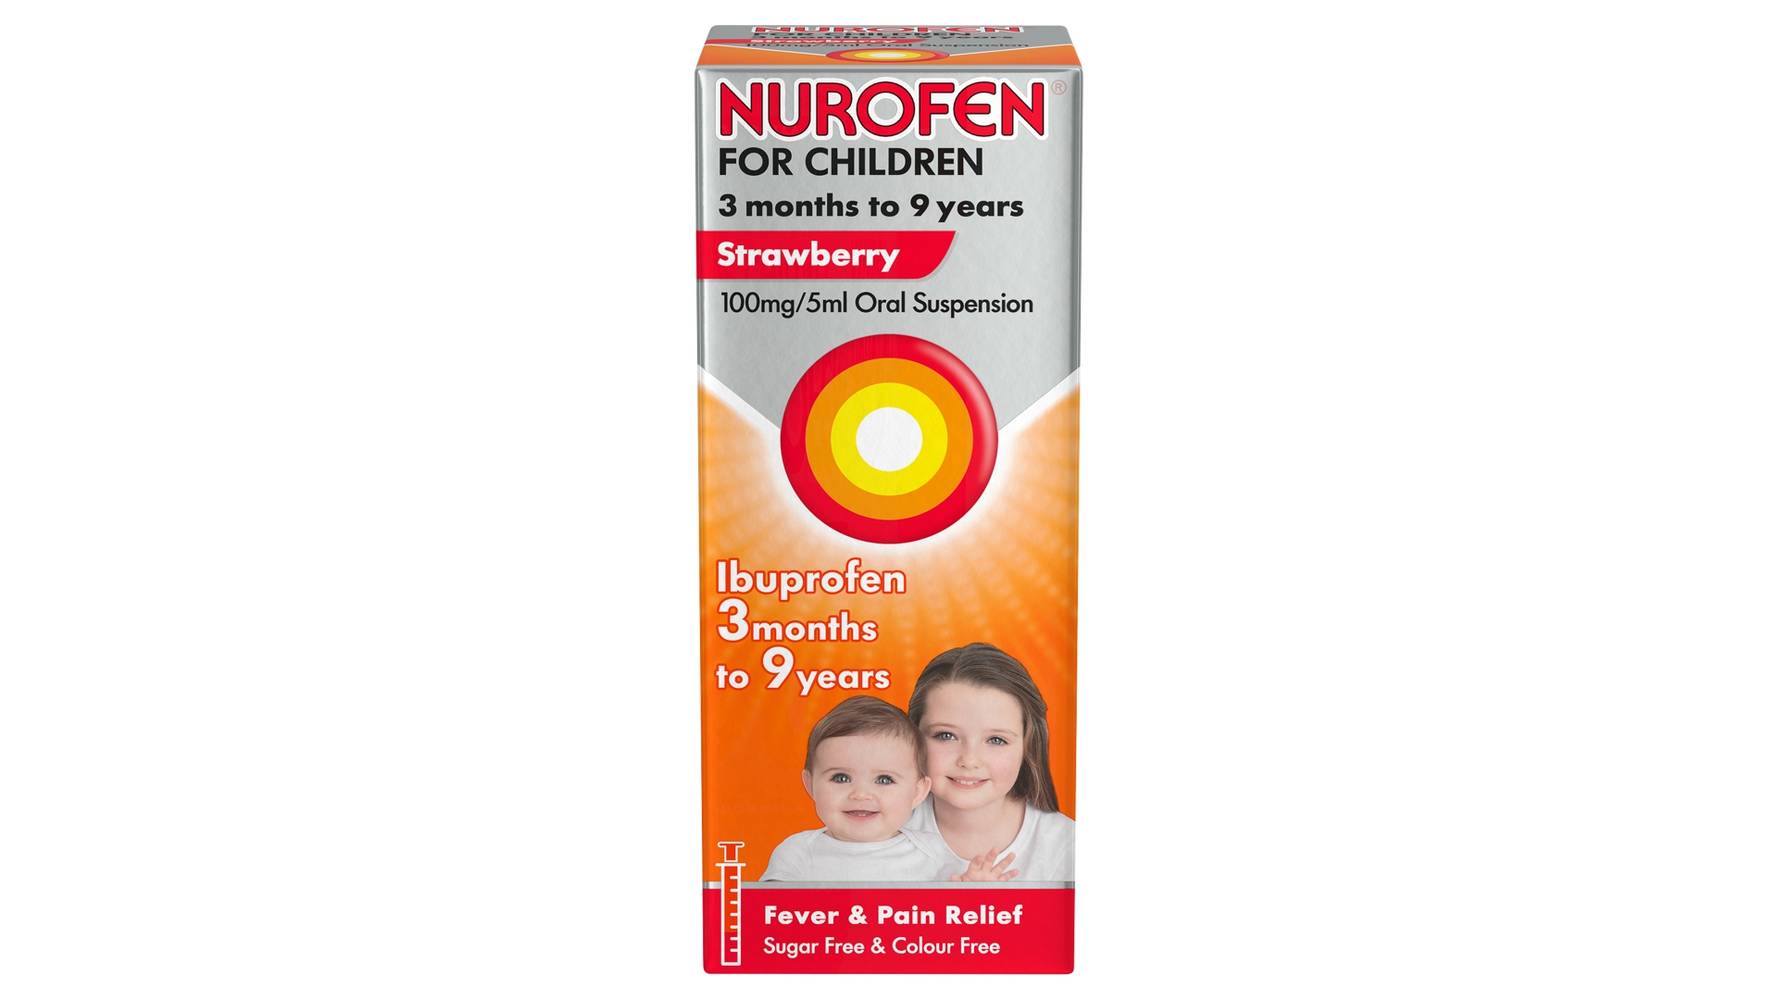 Nurofen For Children Strawberry Oral Suspension 3mths To 9yrs Ibuprofen